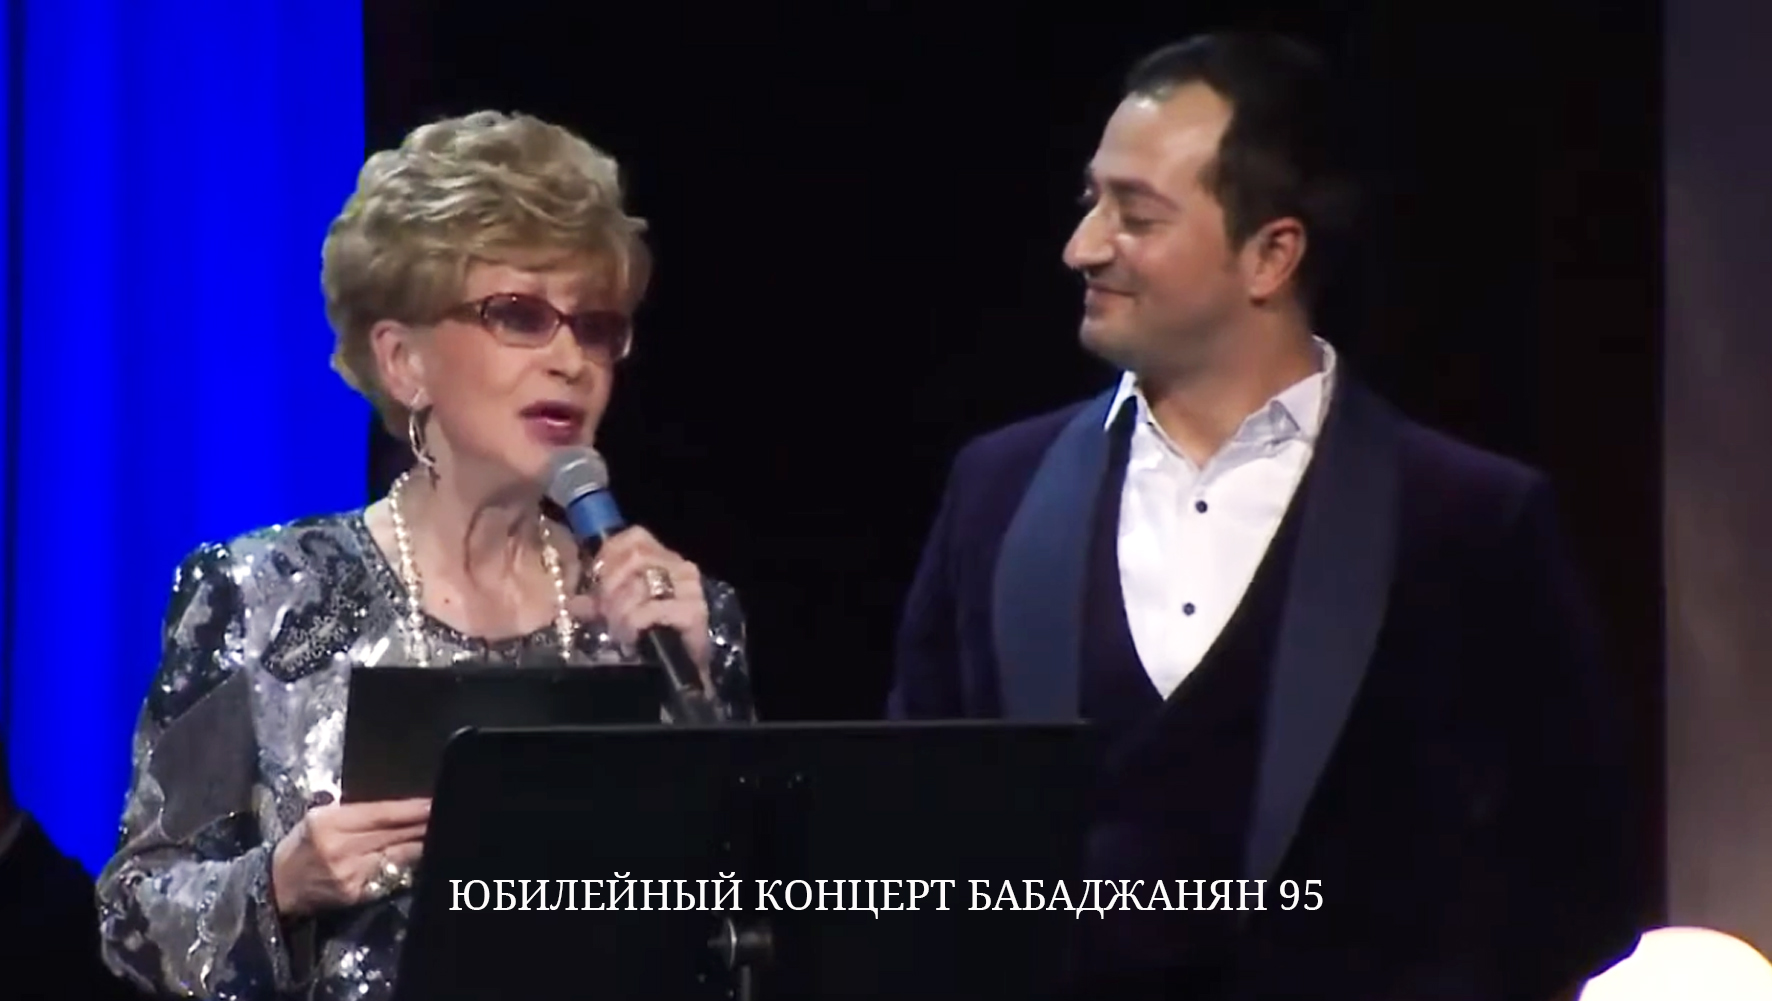 БАБАДЖАНЯН 95 юбилейный концерт.
Ведущие: Светлана Моргунова и Авет Барсегян